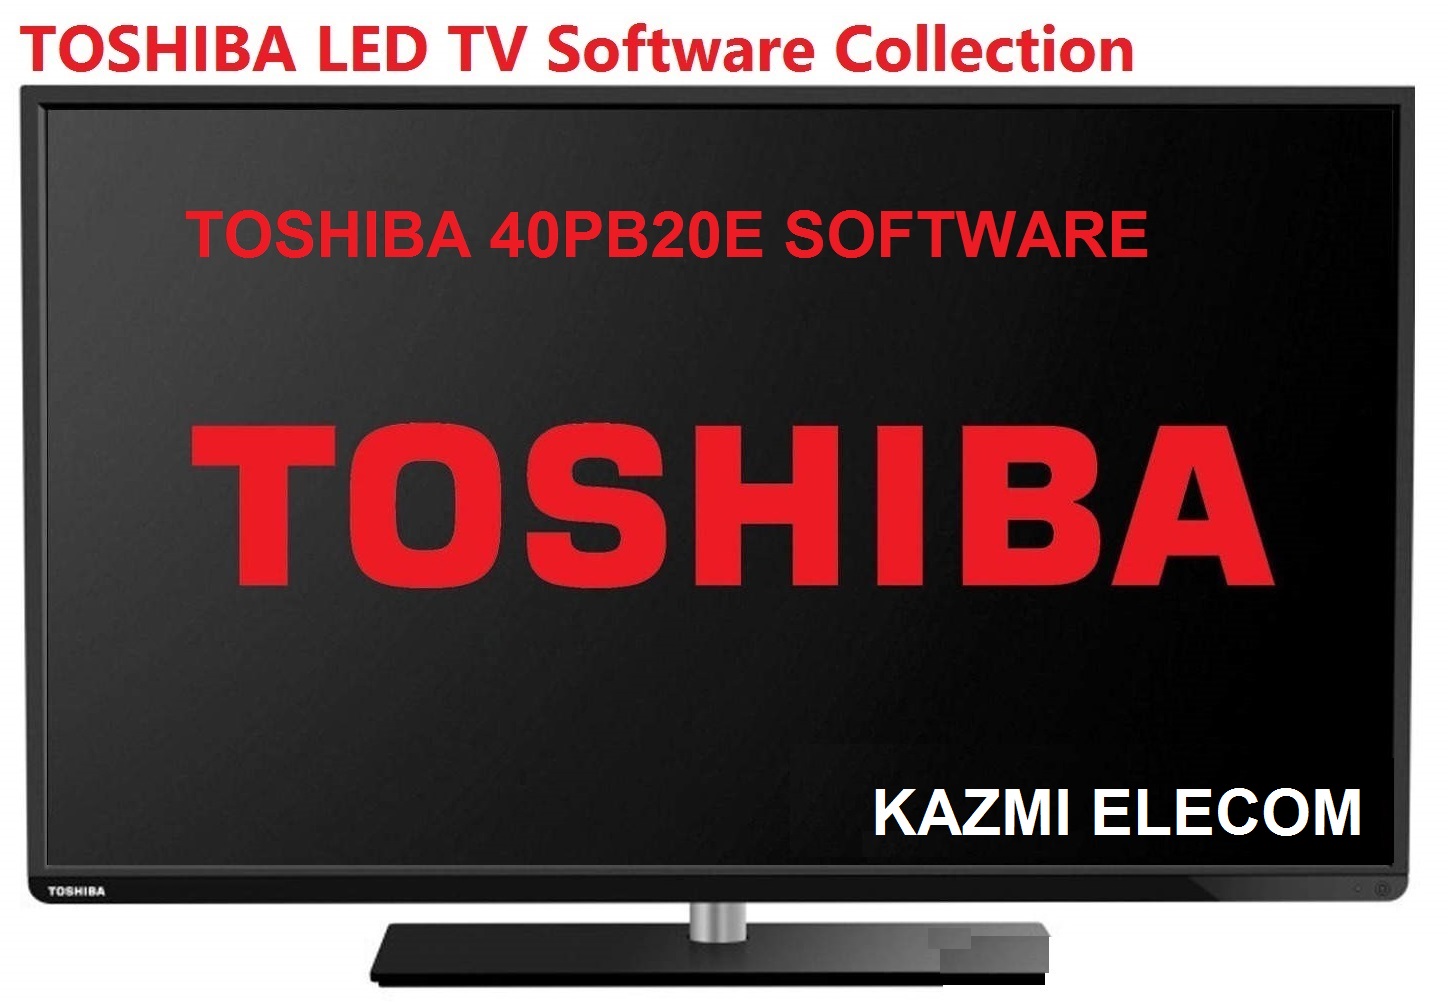 Toshiba 40Pb20E